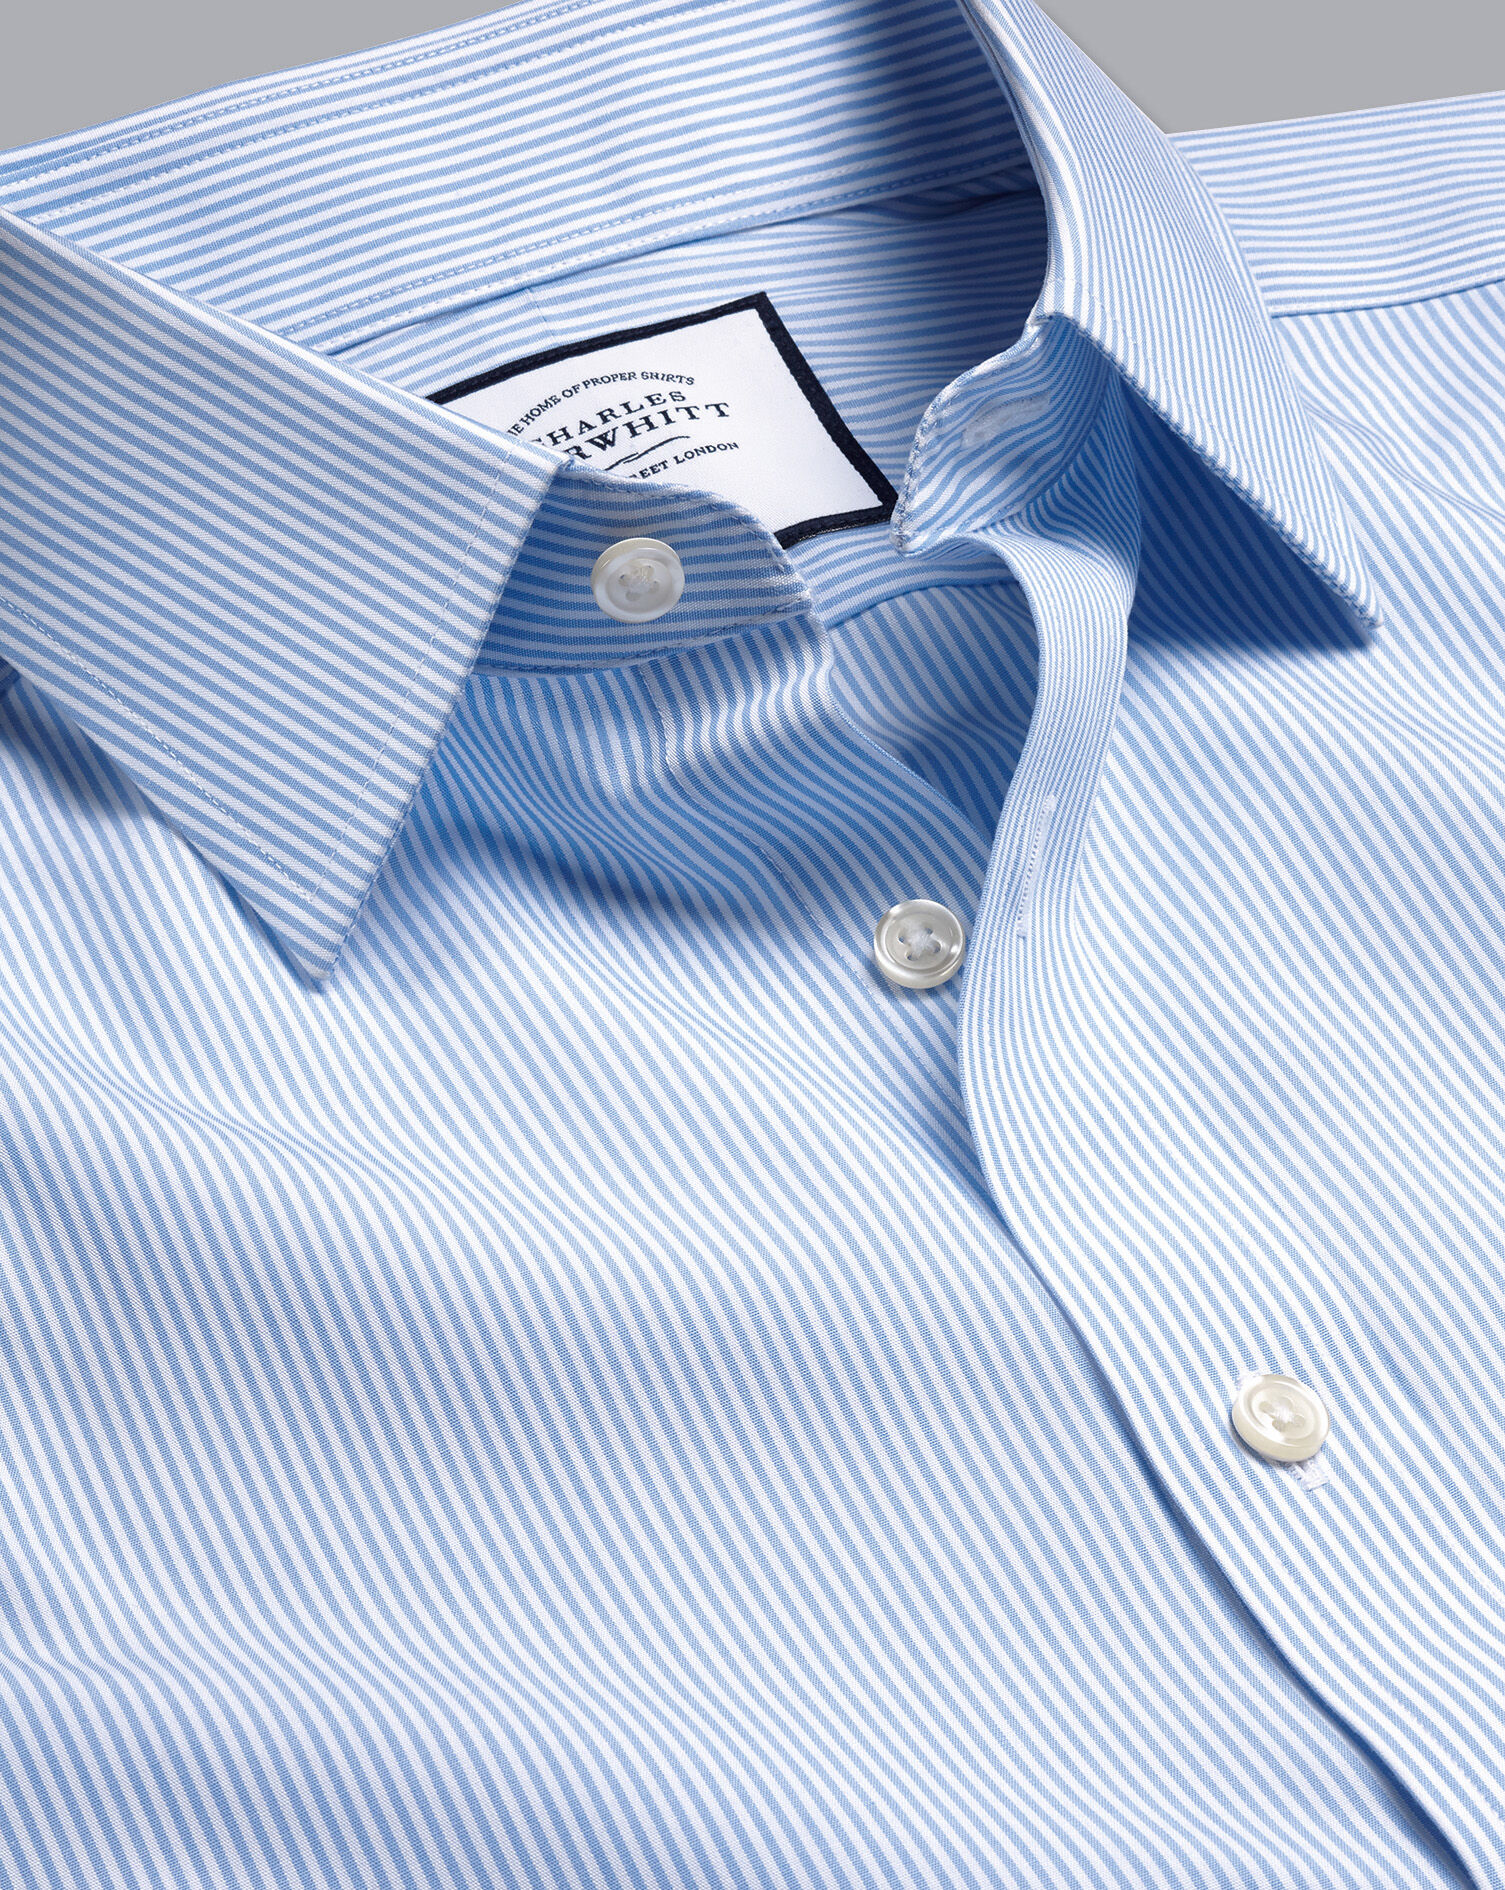 Herren Charles Tyrwhitt Größe Small Classic Fit Button Up Shirt Oberteil rot blau kariert 